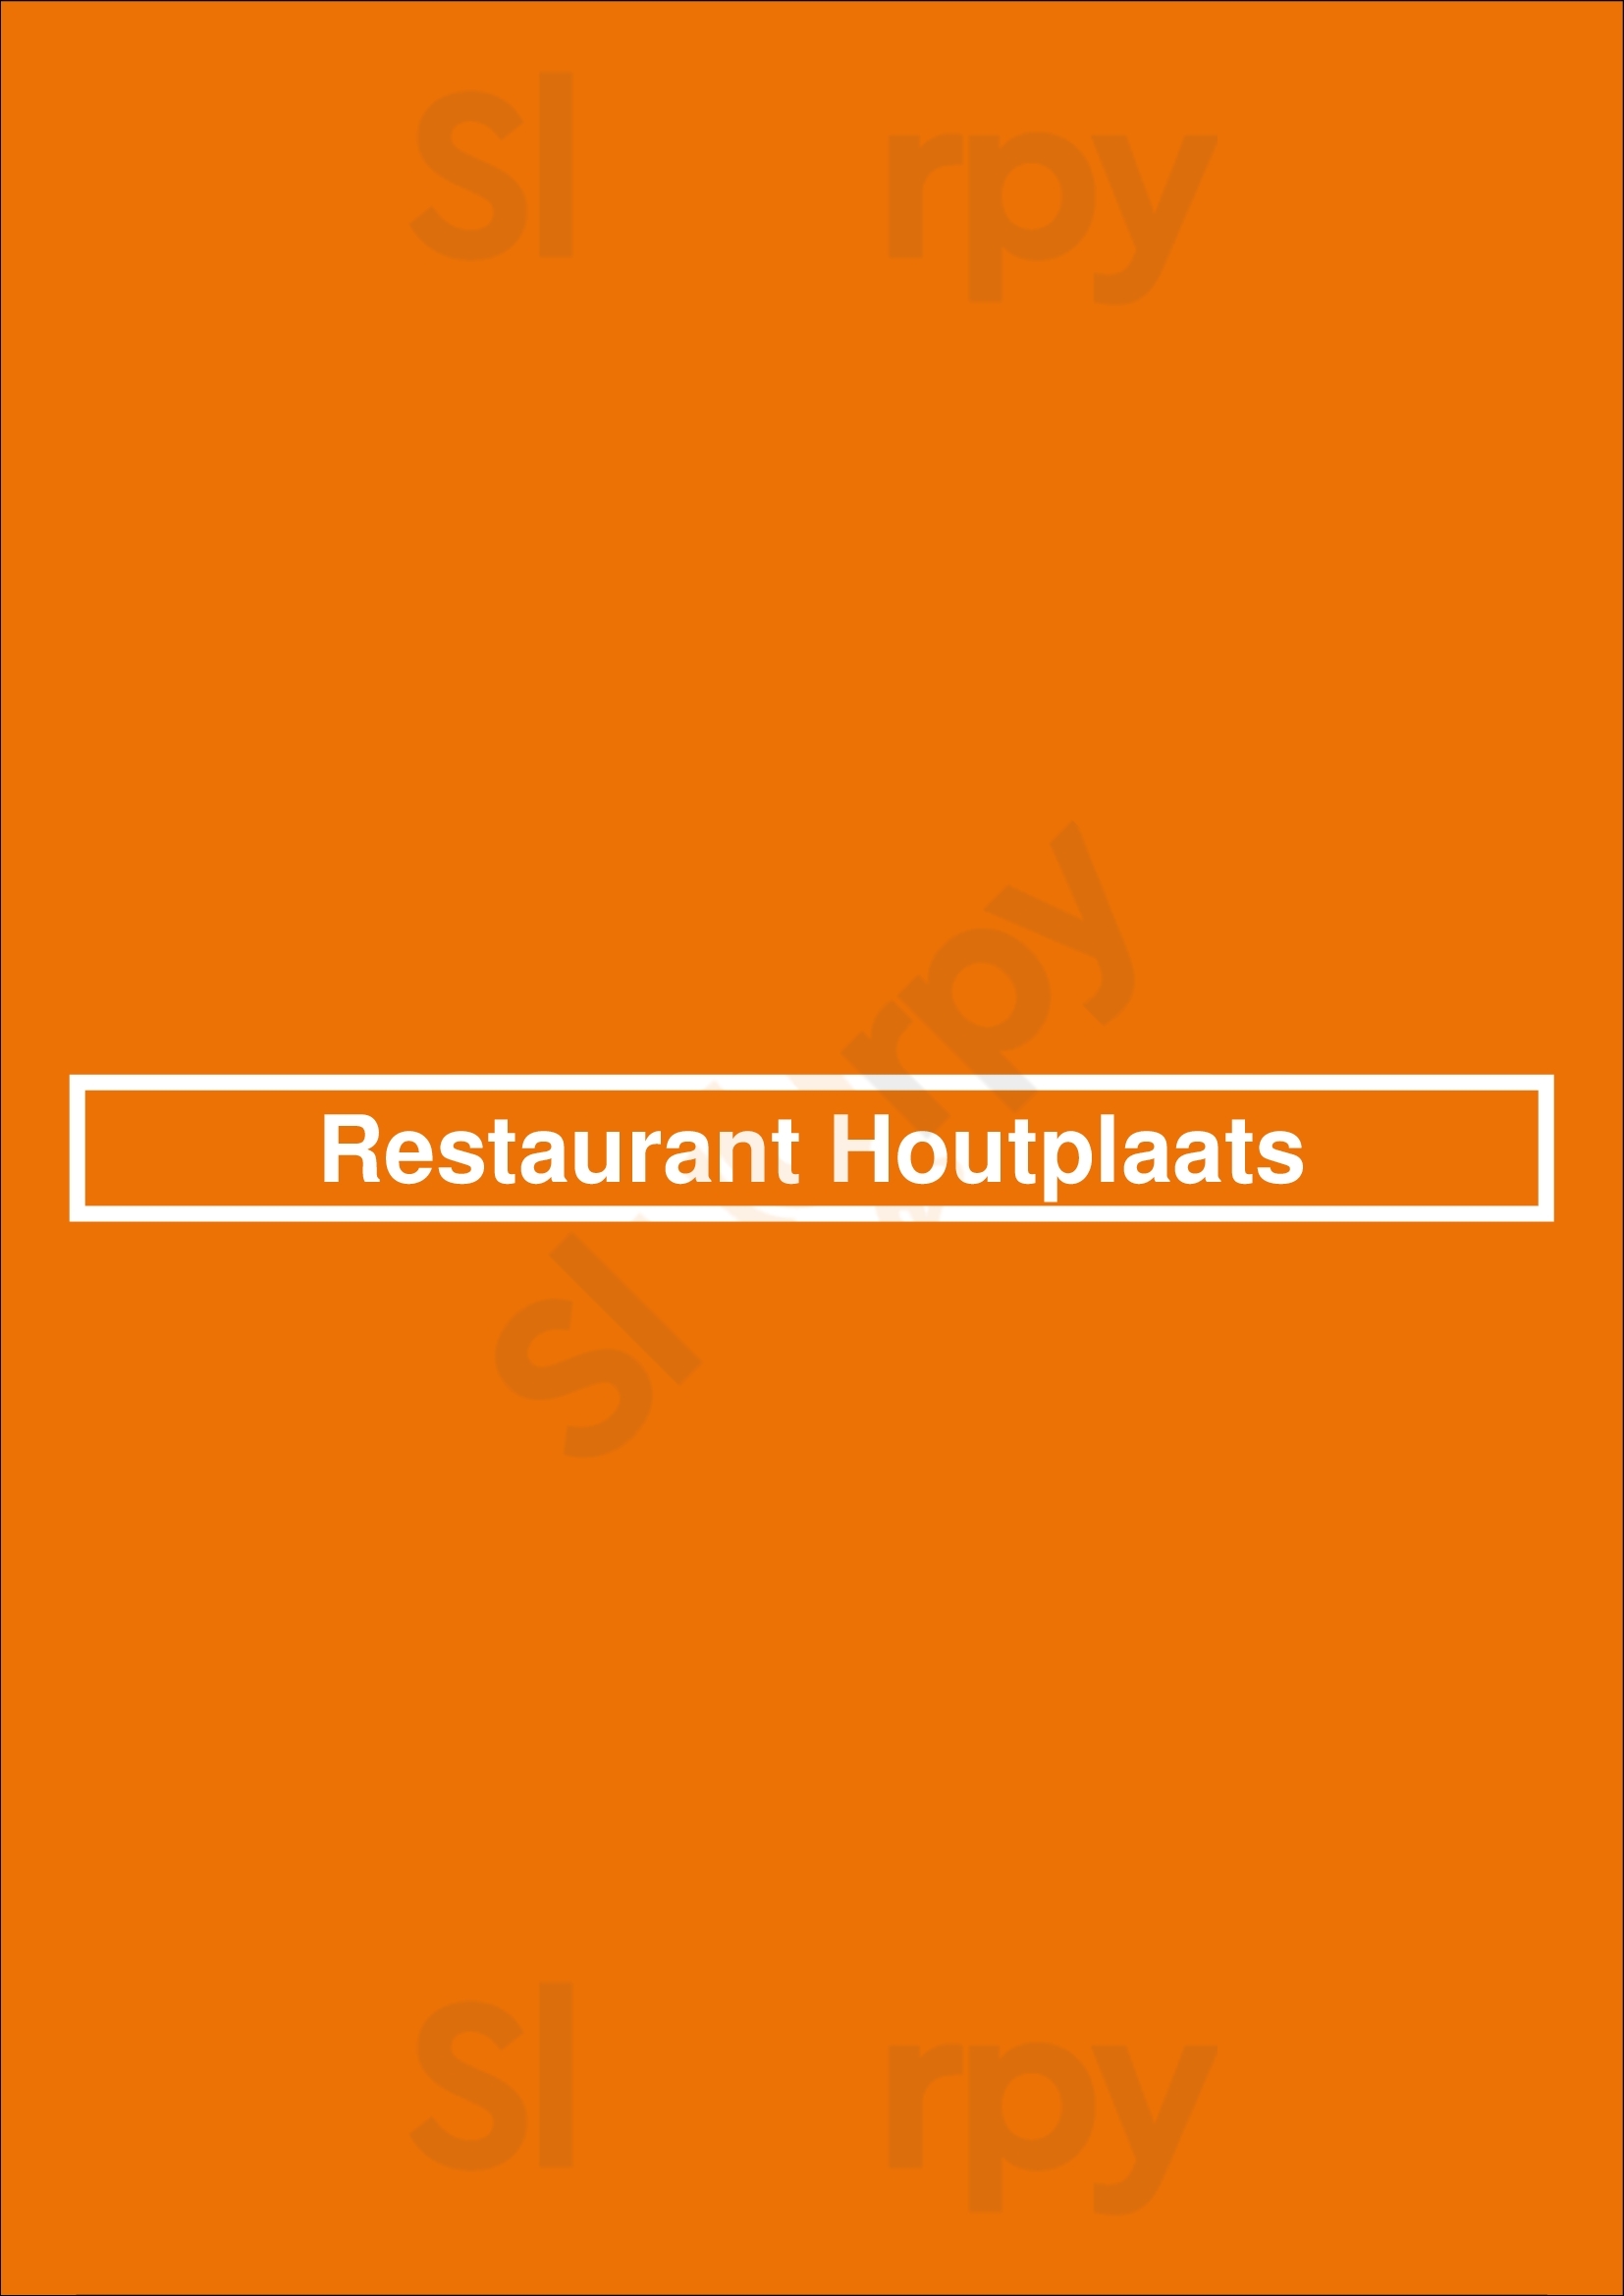 Restaurant Houtplaats Rheden Menu - 1